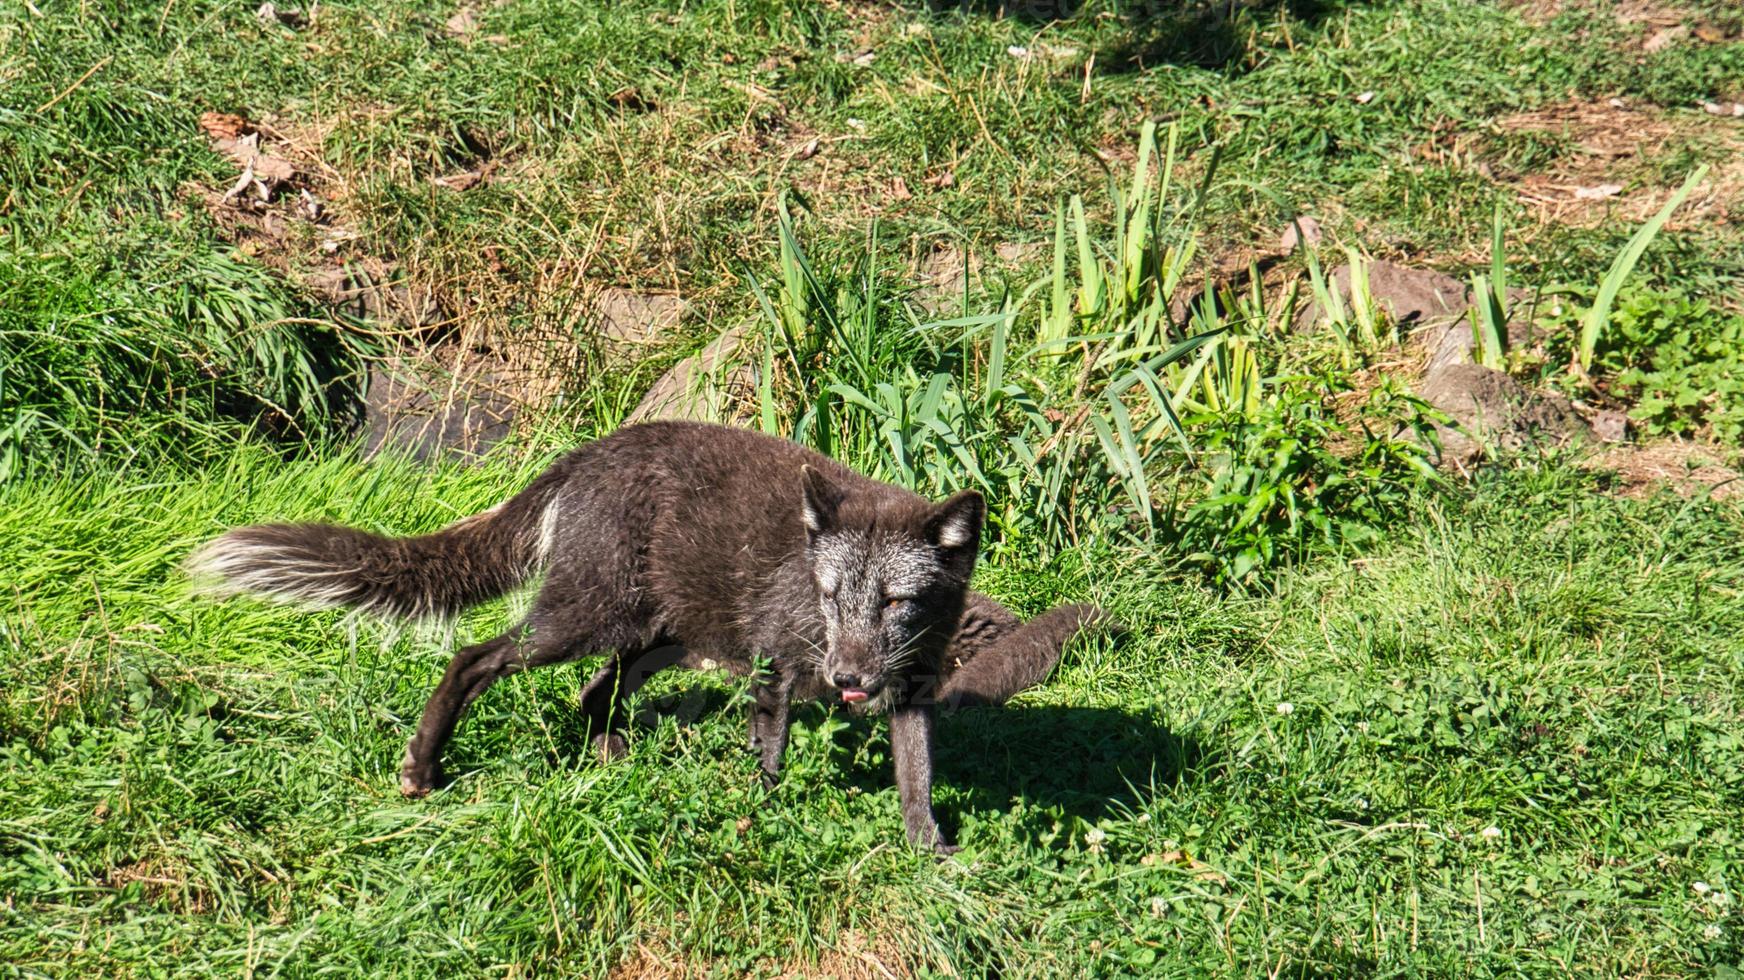 zwarte vos in close-up kijken naar de kijker. het dier is niet bang foto